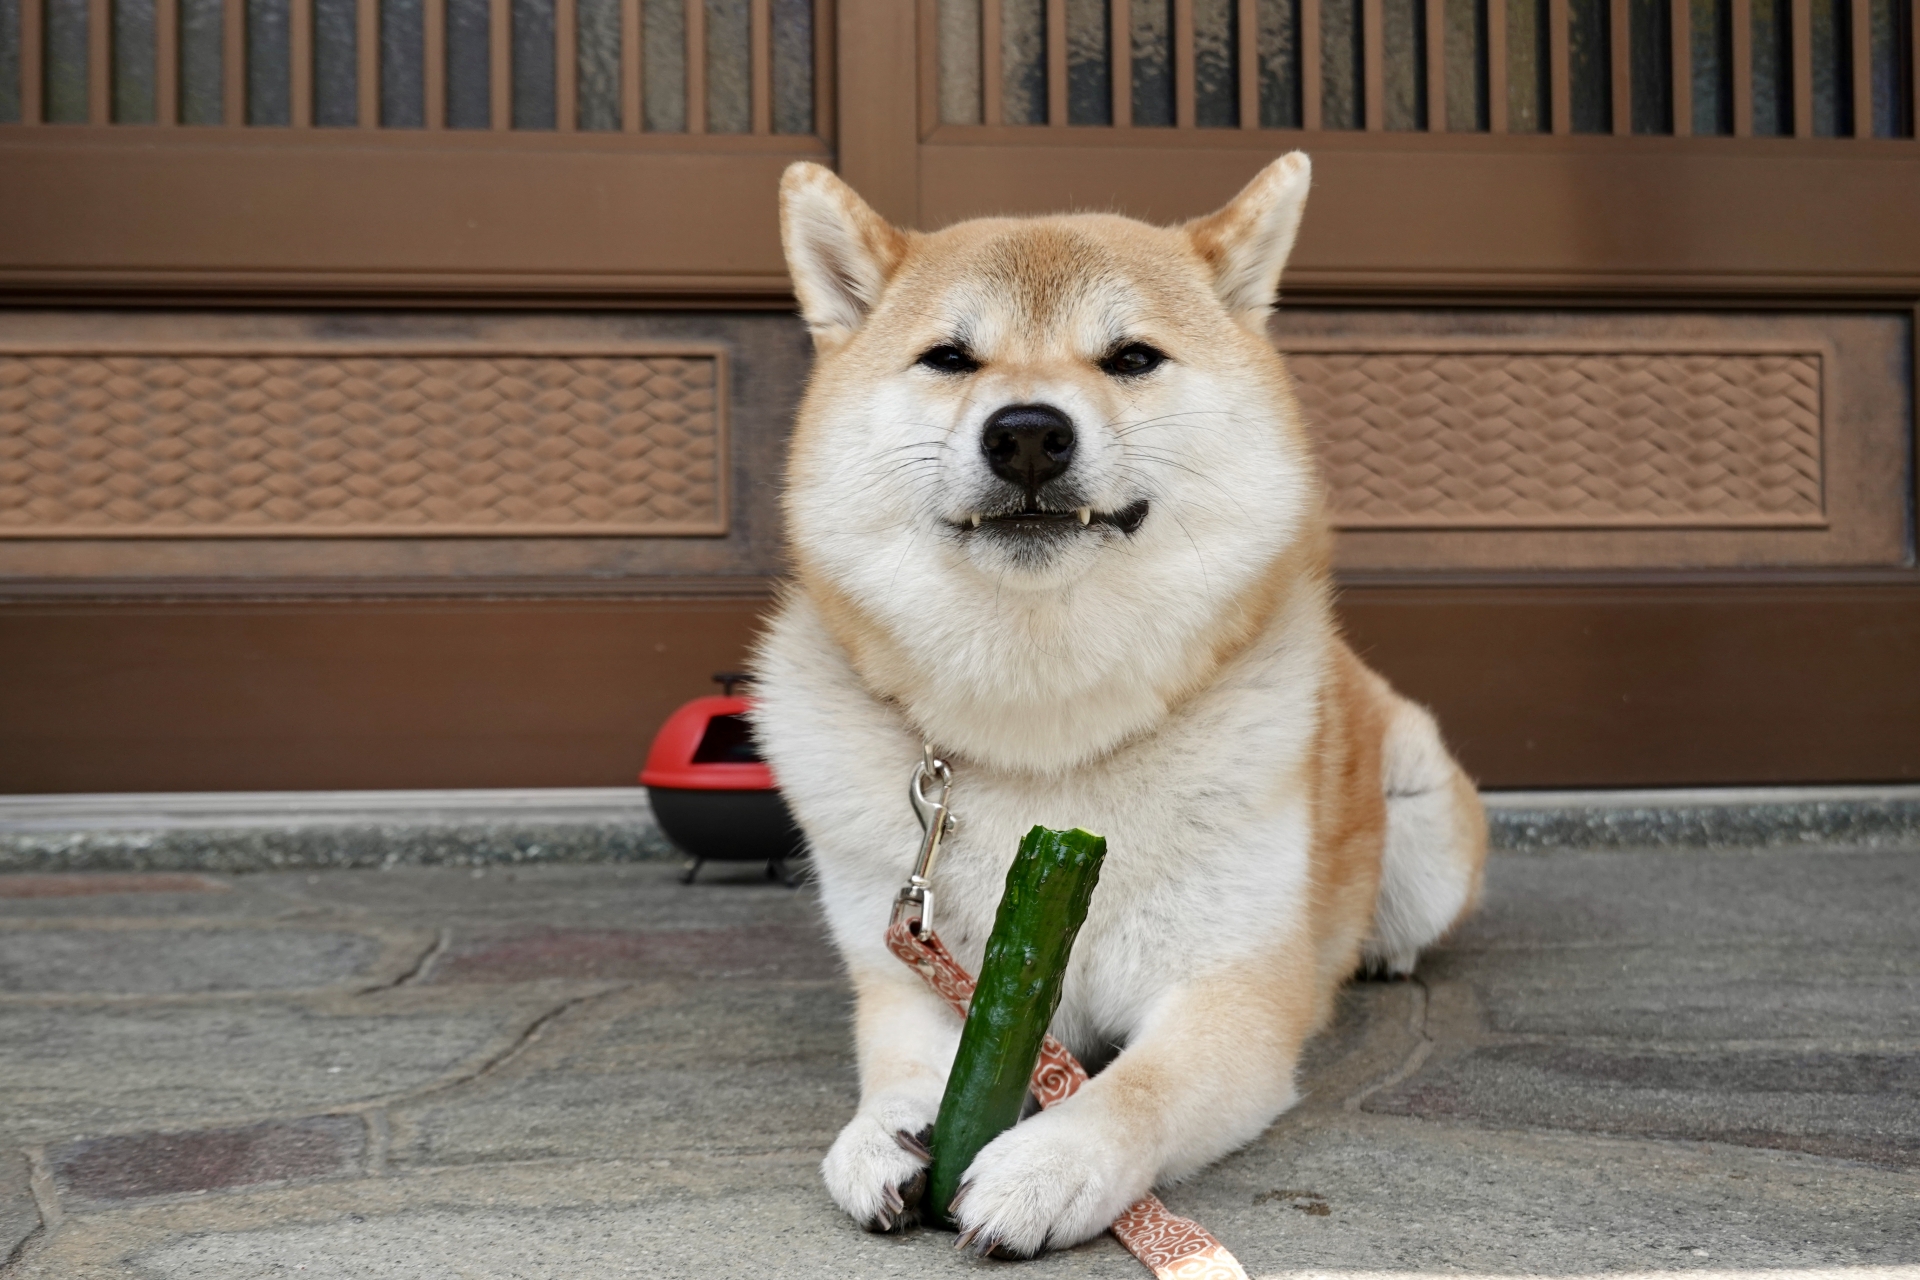 きゅうりを食べる犬